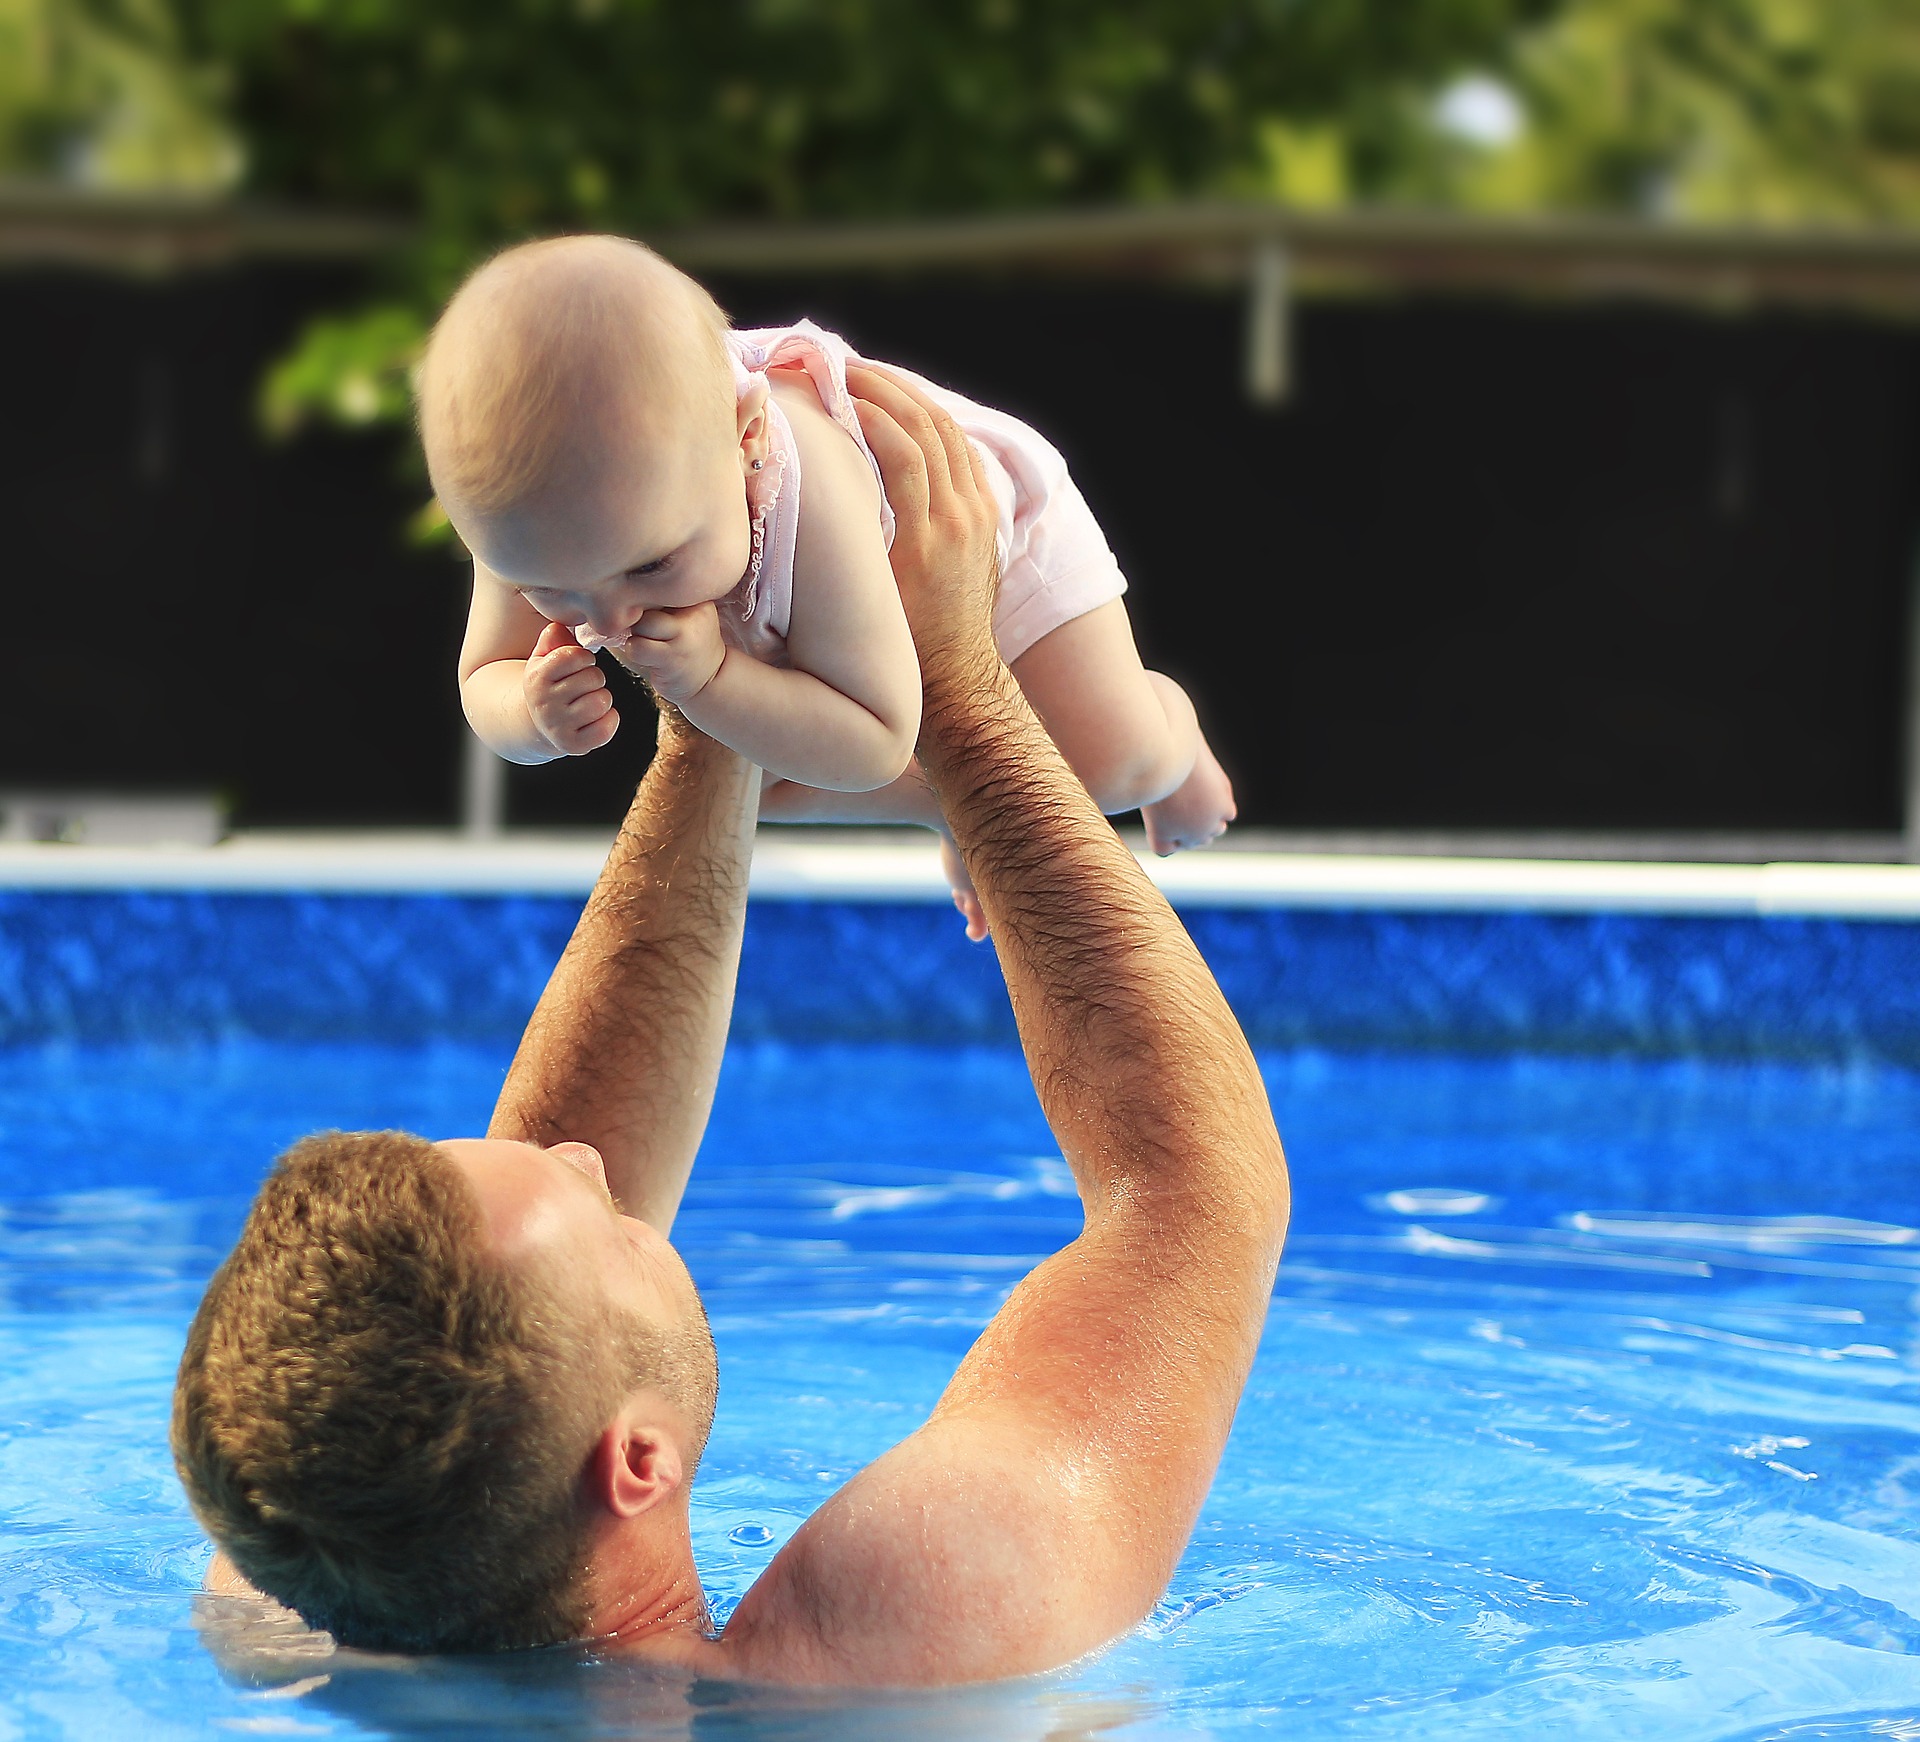 Tendance bébé nageur : pourquoi tout le monde emmène son bébé à la piscine ?